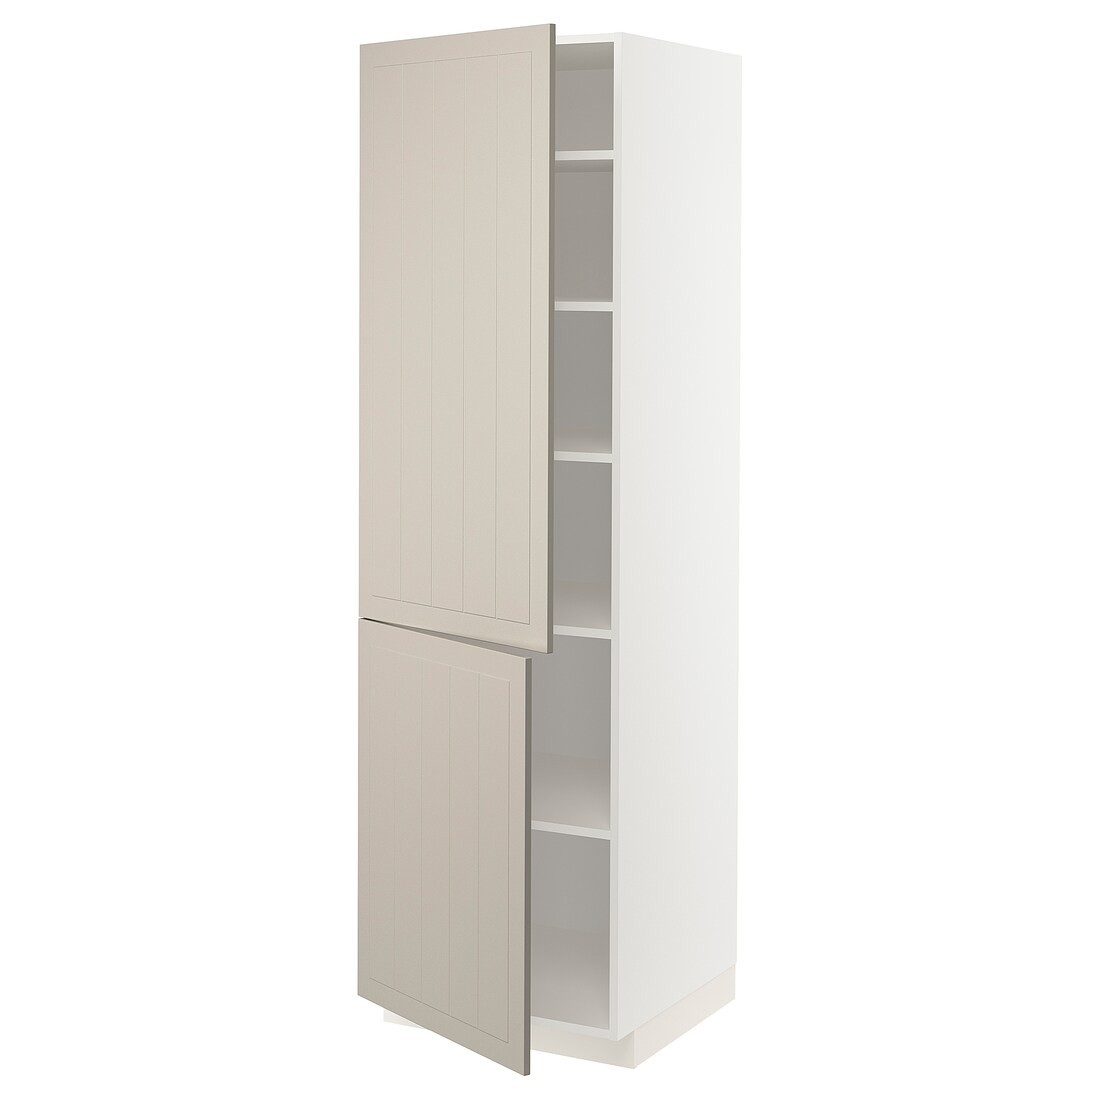 IKEA METOD МЕТОД Висока шафа з полицями / 2 дверцят, білий / Stensund бежевий, 60x60x200 см 39460350 394.603.50